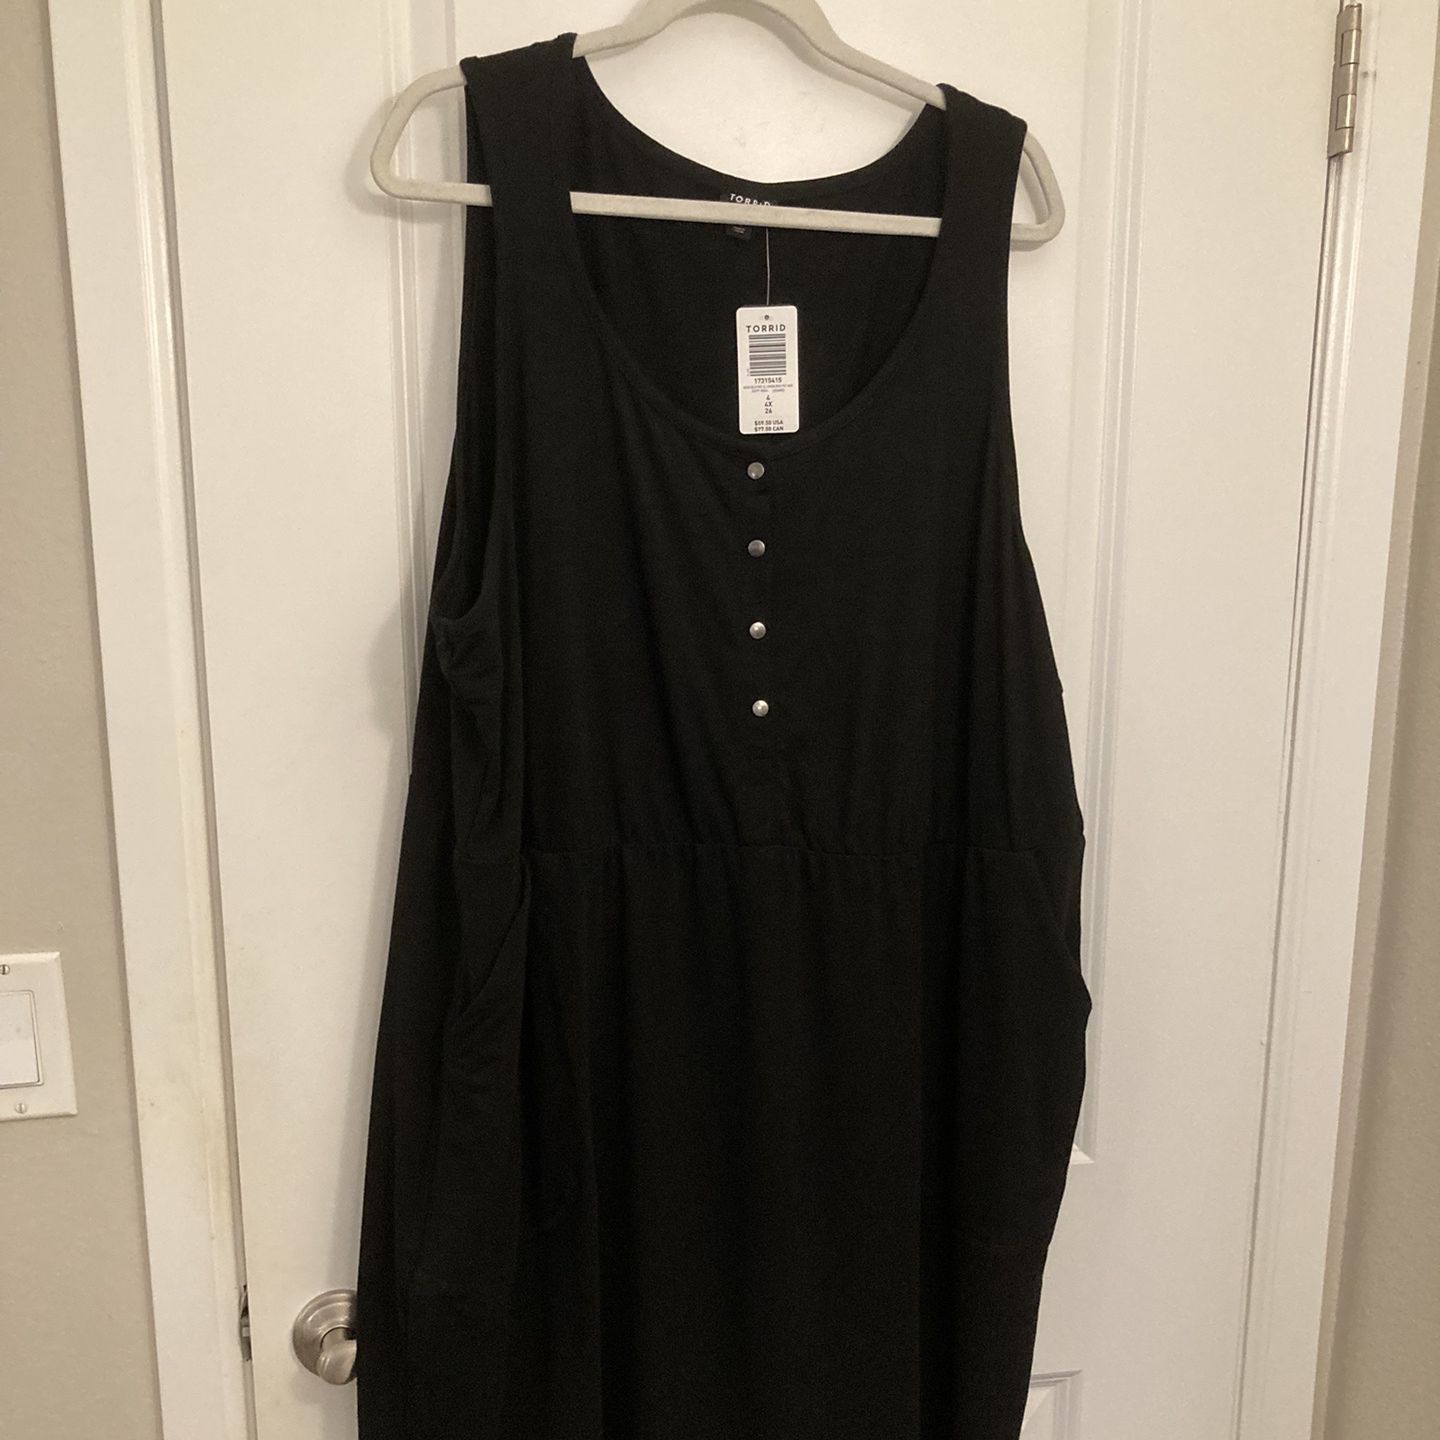 Torrid jersey black Dress With Pockets - Still Has Tag